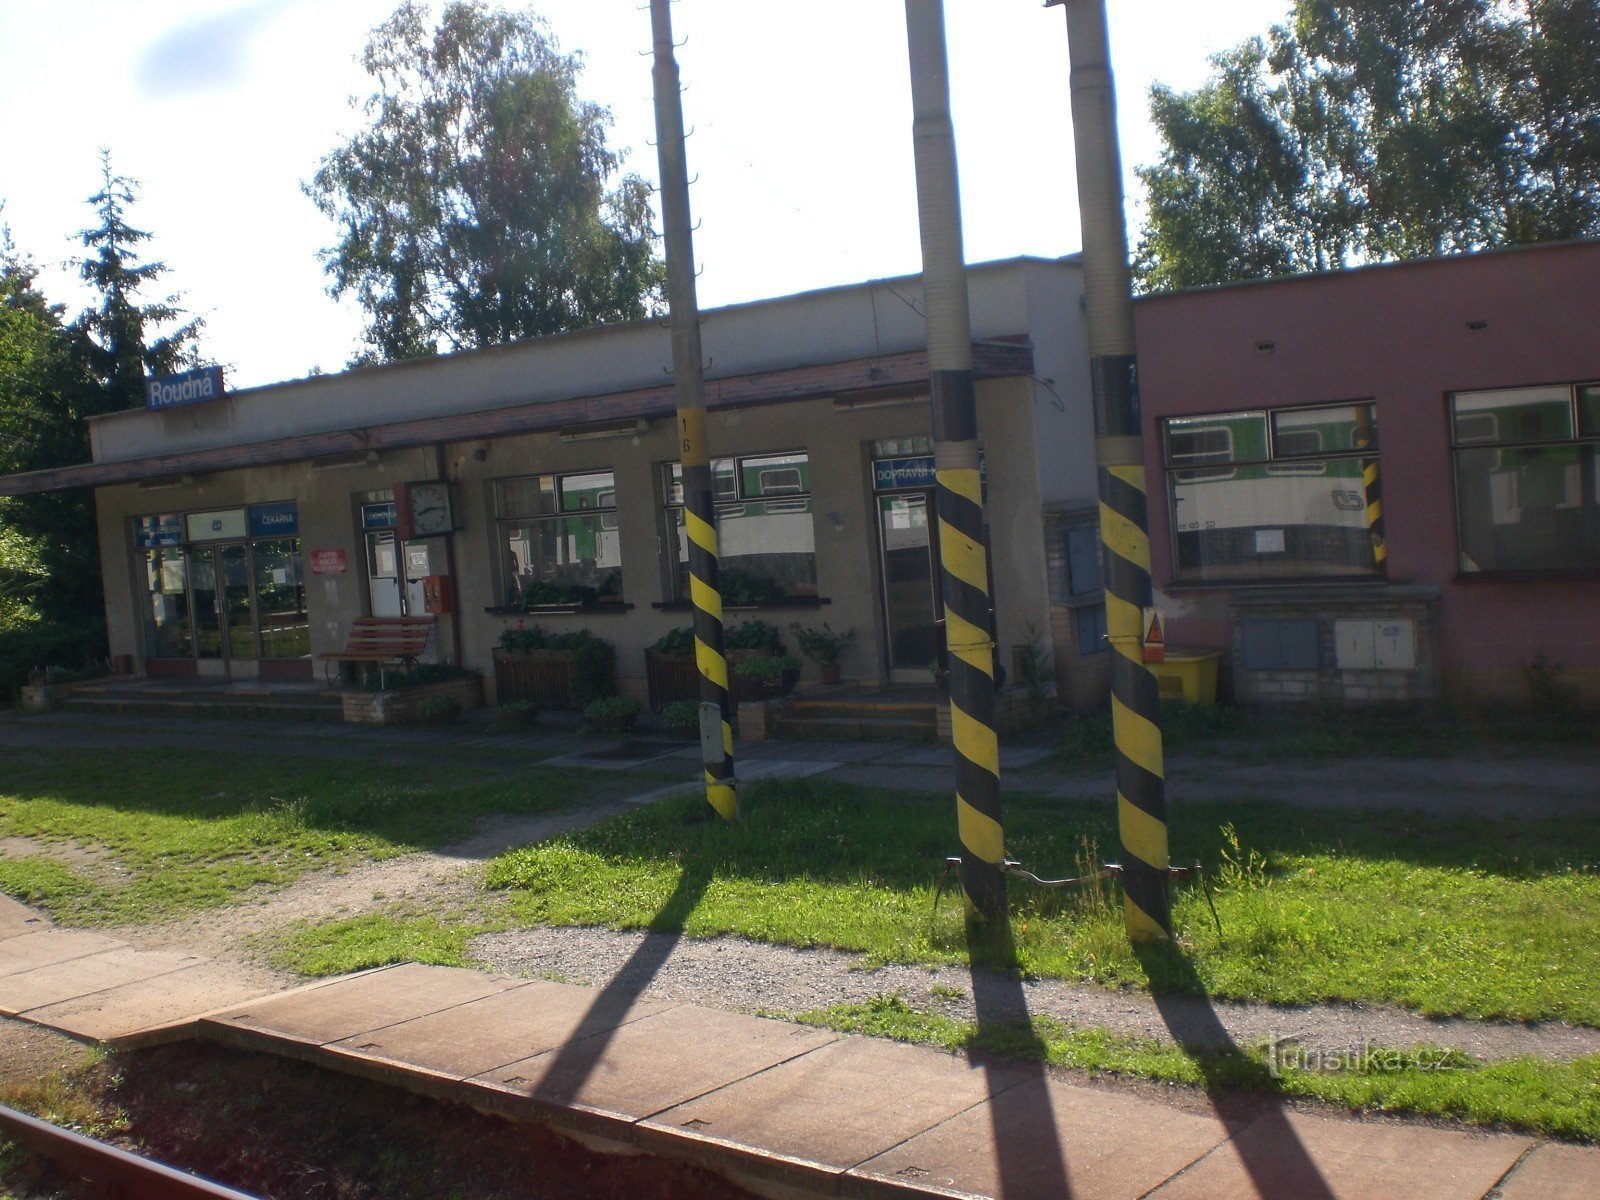 Roudná - railway station